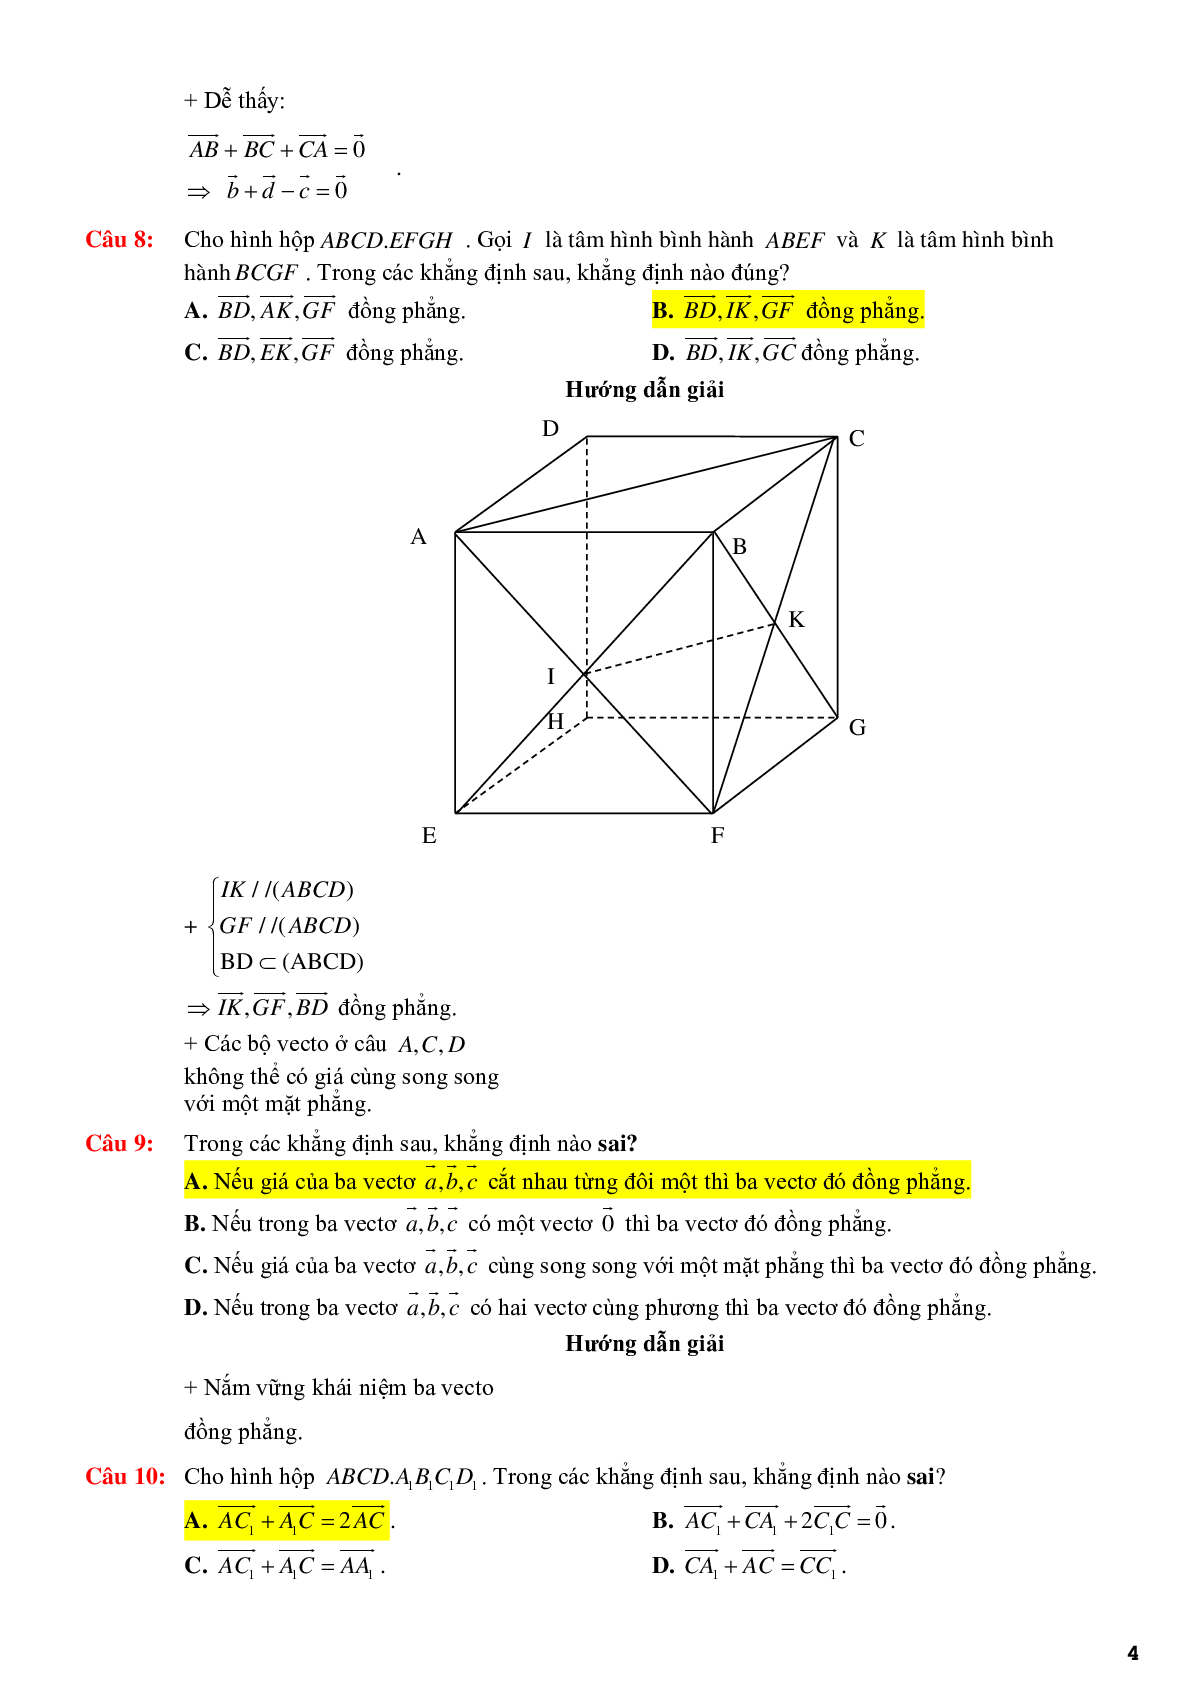 123 bài tập trắc nghiệm quan hệ vuông góc có lời giải chi tiết (trang 4)